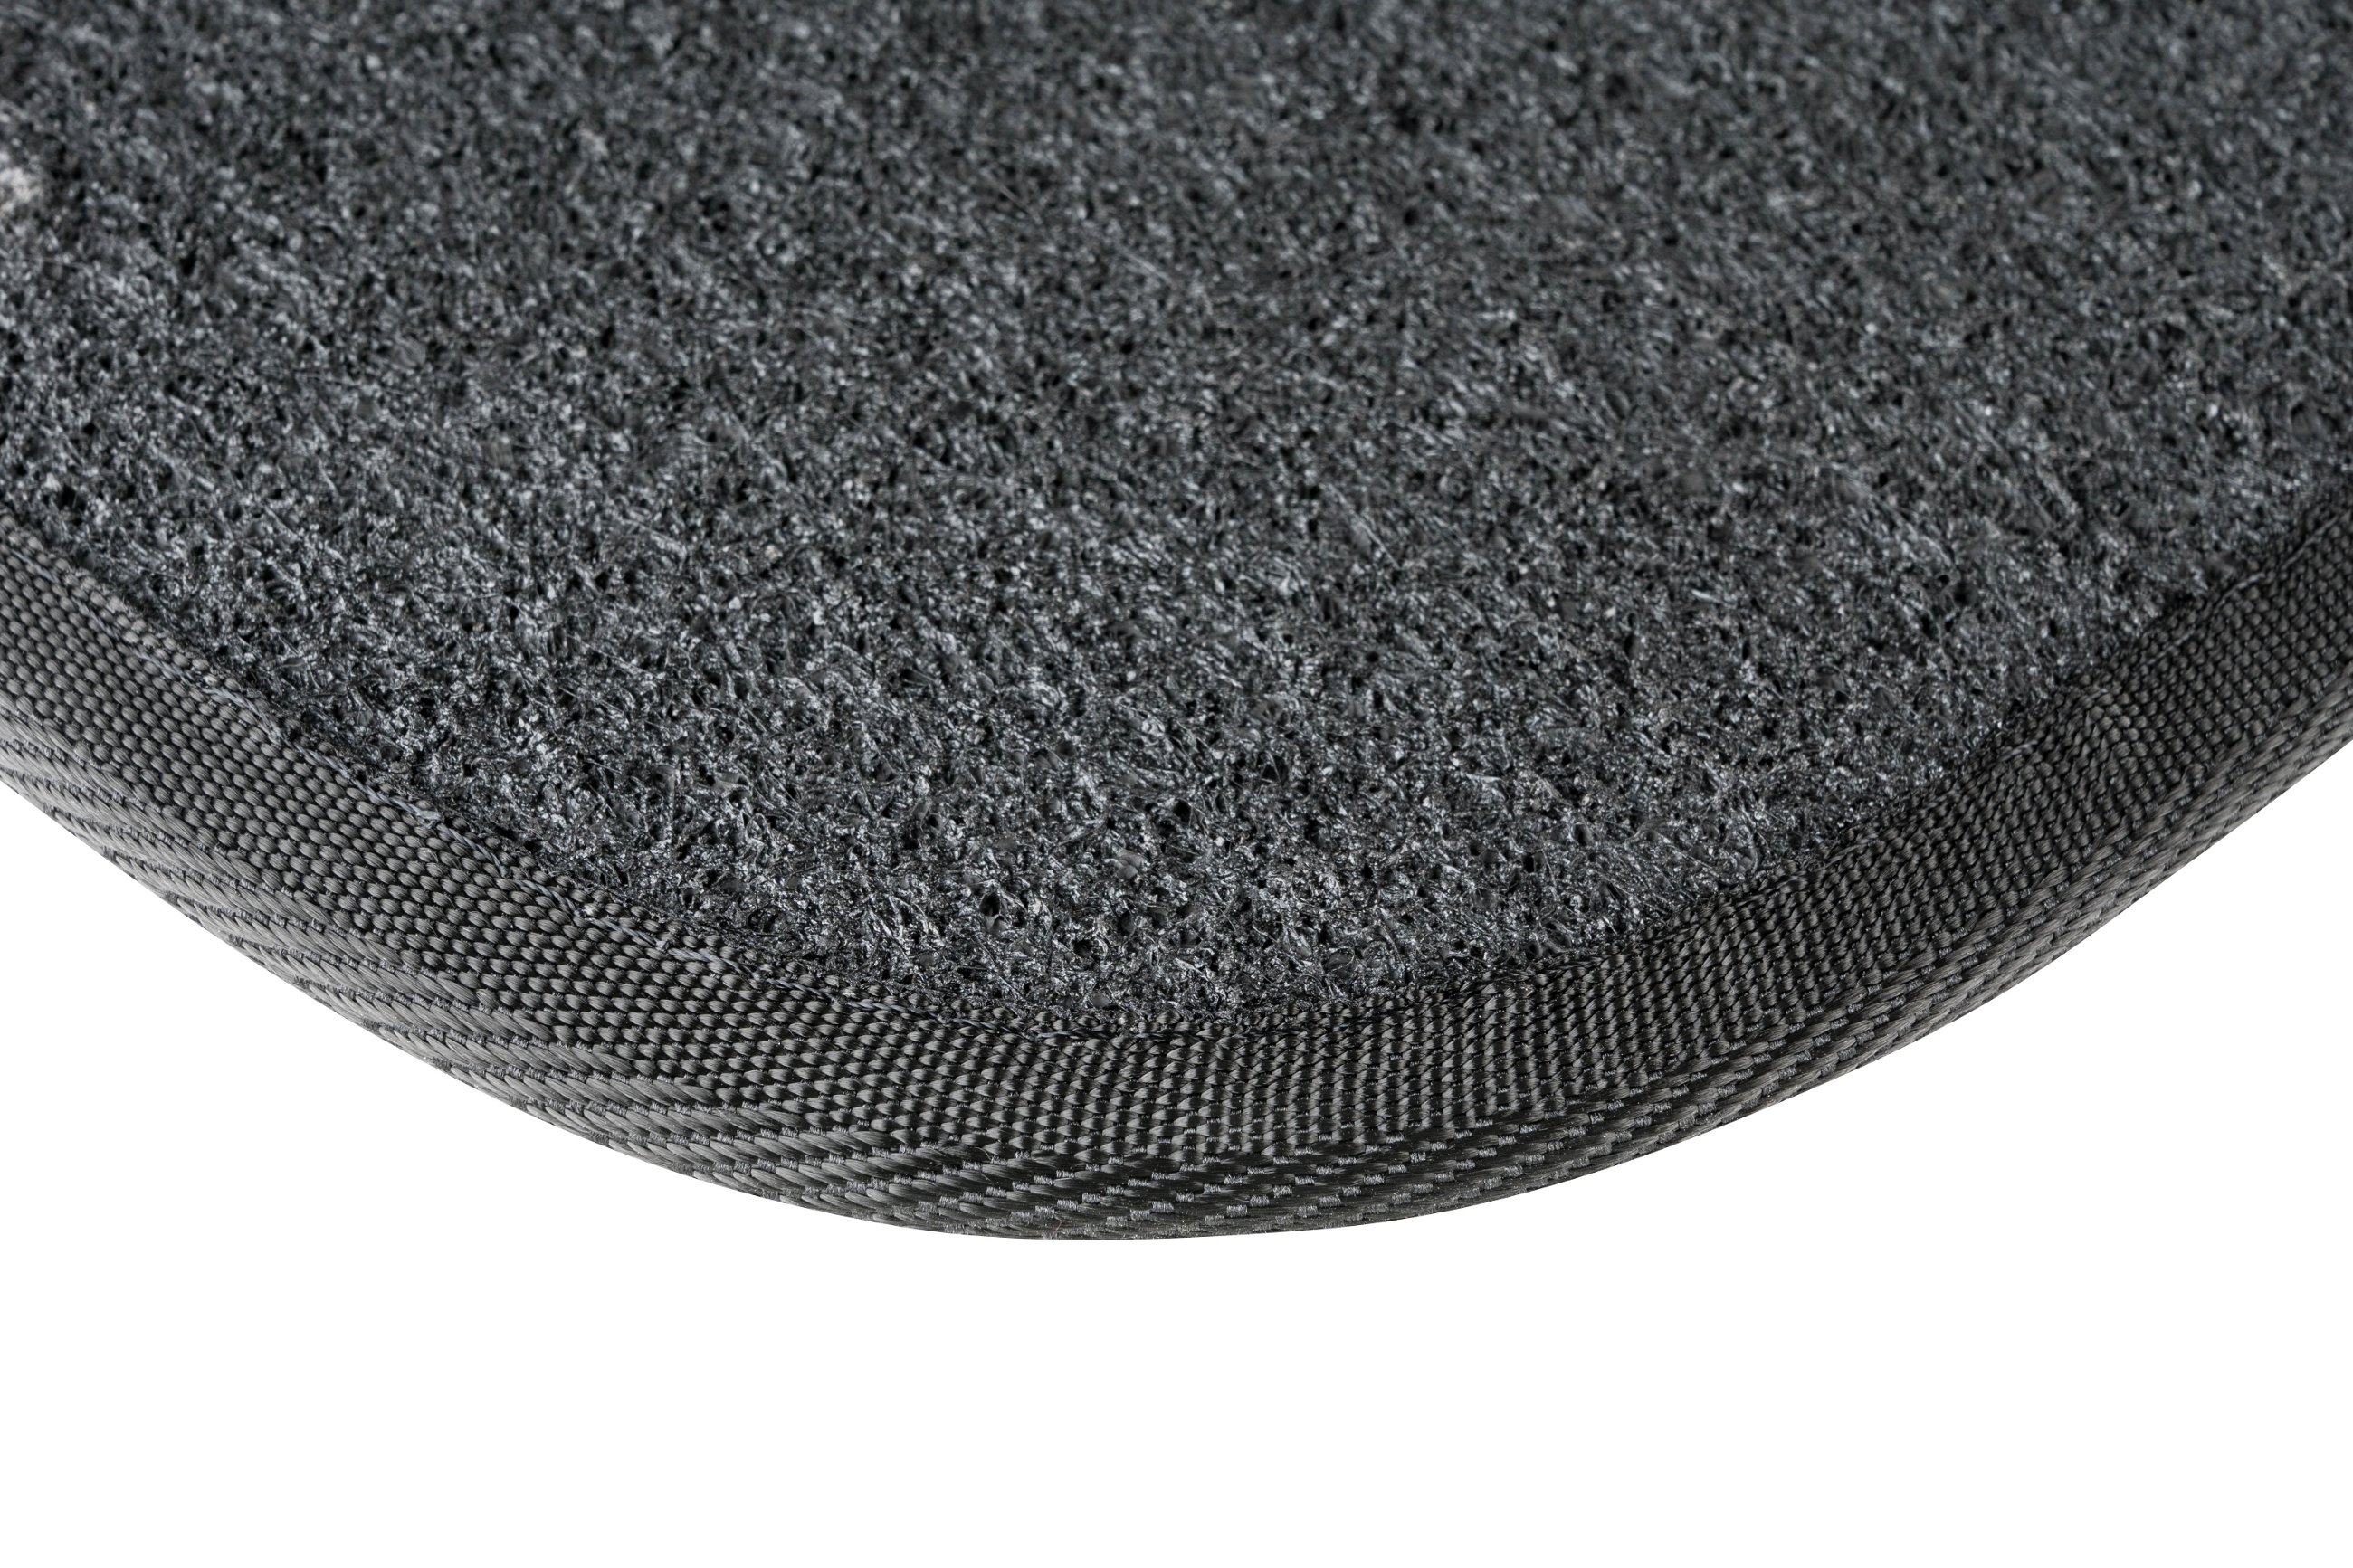 Auto-Teppich The Color, Universal Fußmatten-Set 4-teilig schwarz/lila